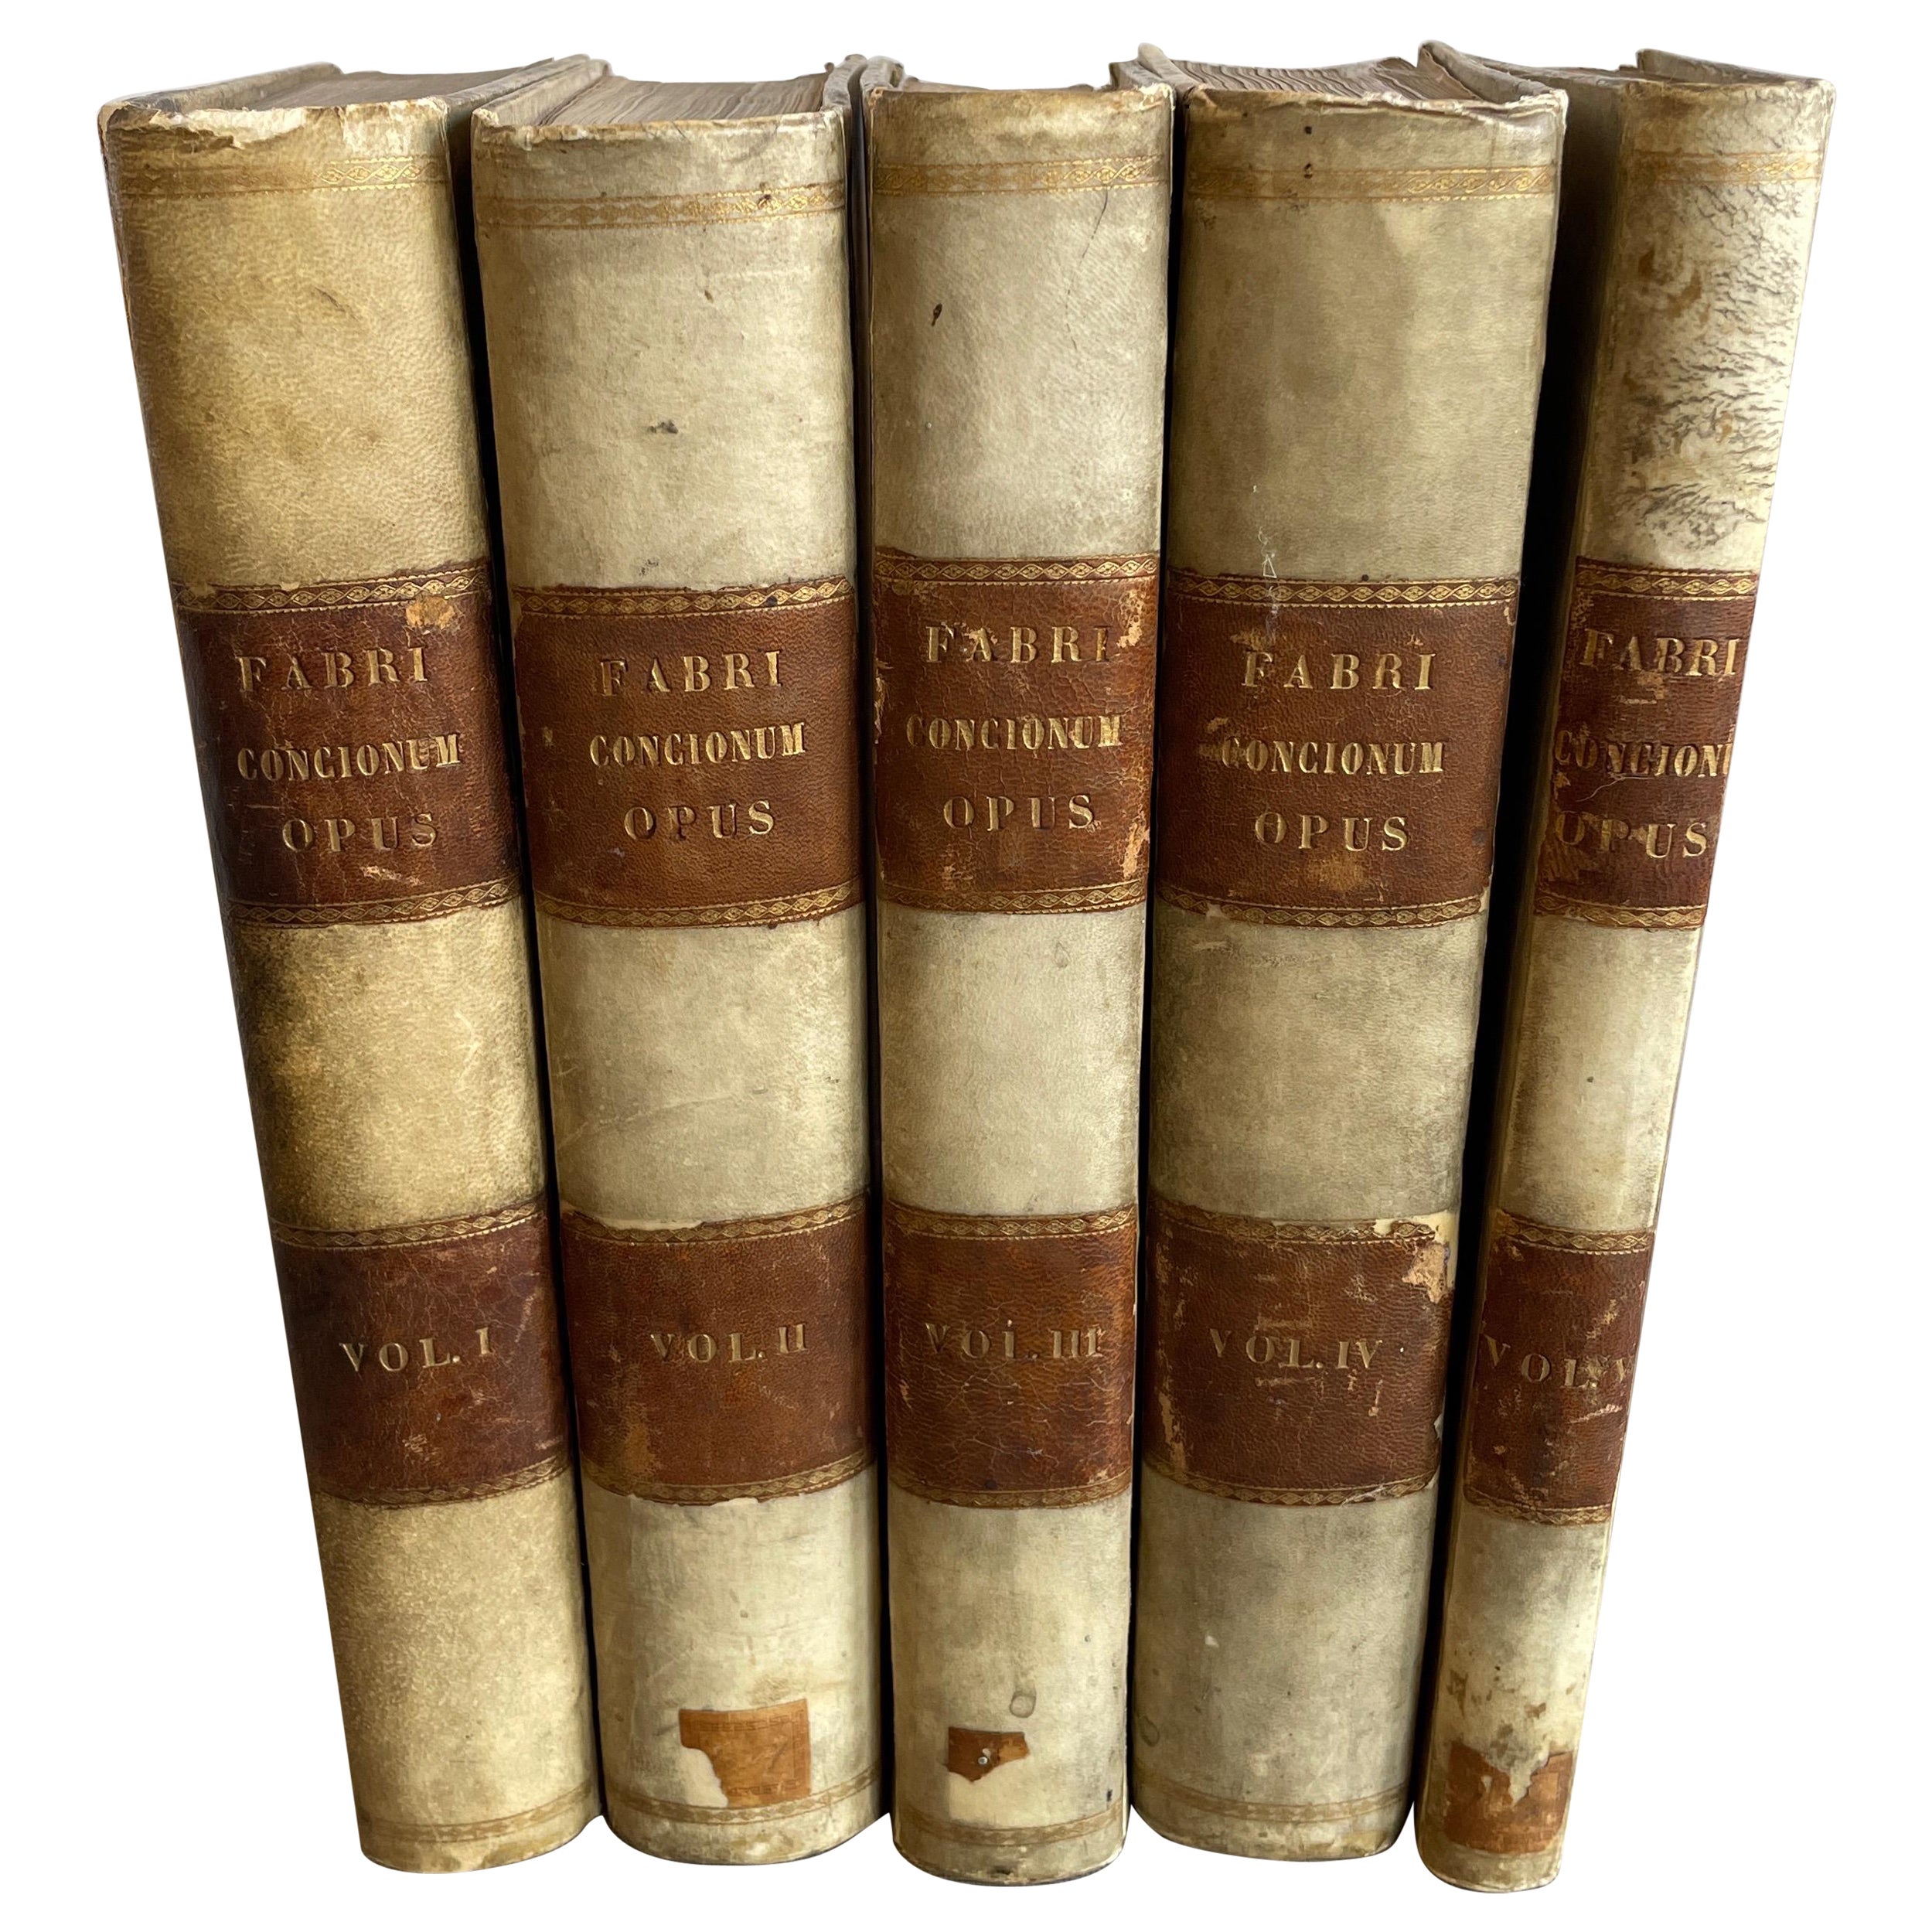 Set of 5 Fabri Concionum opus vellum books from 1872 For Sale